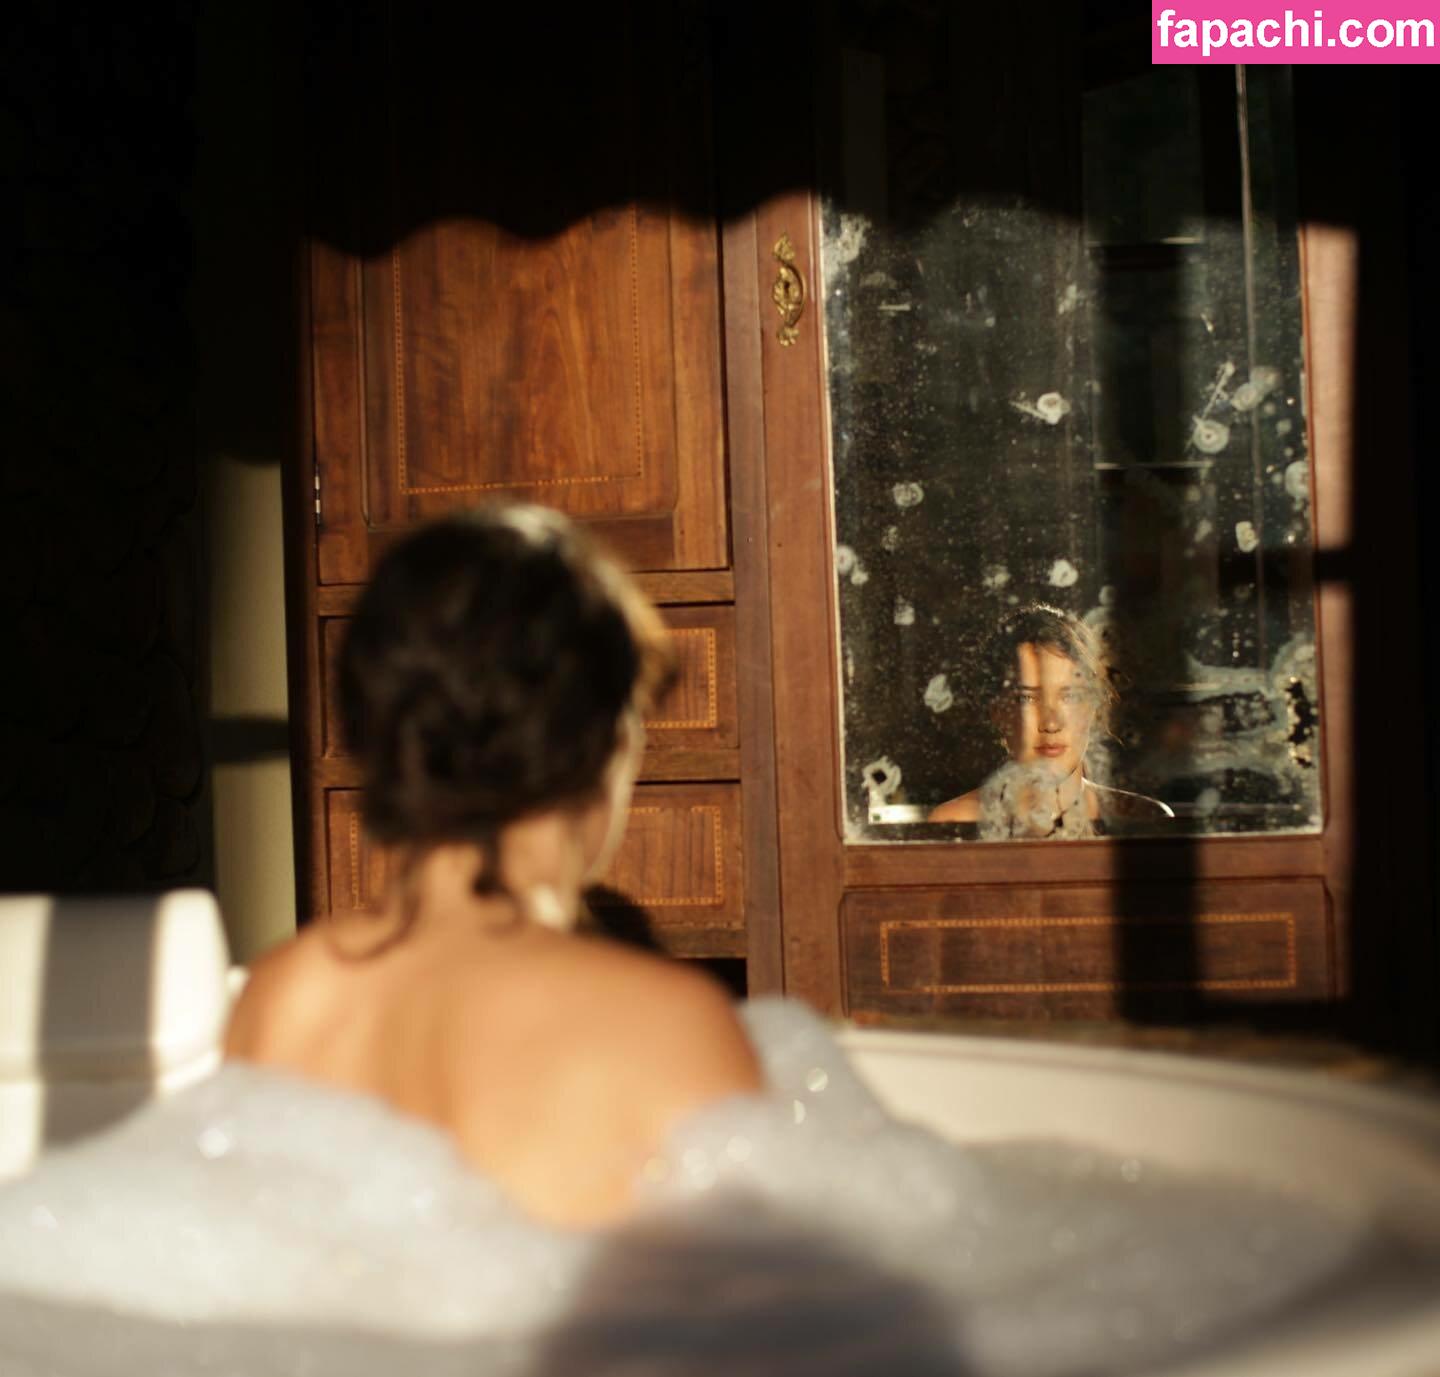 Adriana Birolli / adrianabirolli / adrivainilla leaked nude photo #0026 from OnlyFans/Patreon